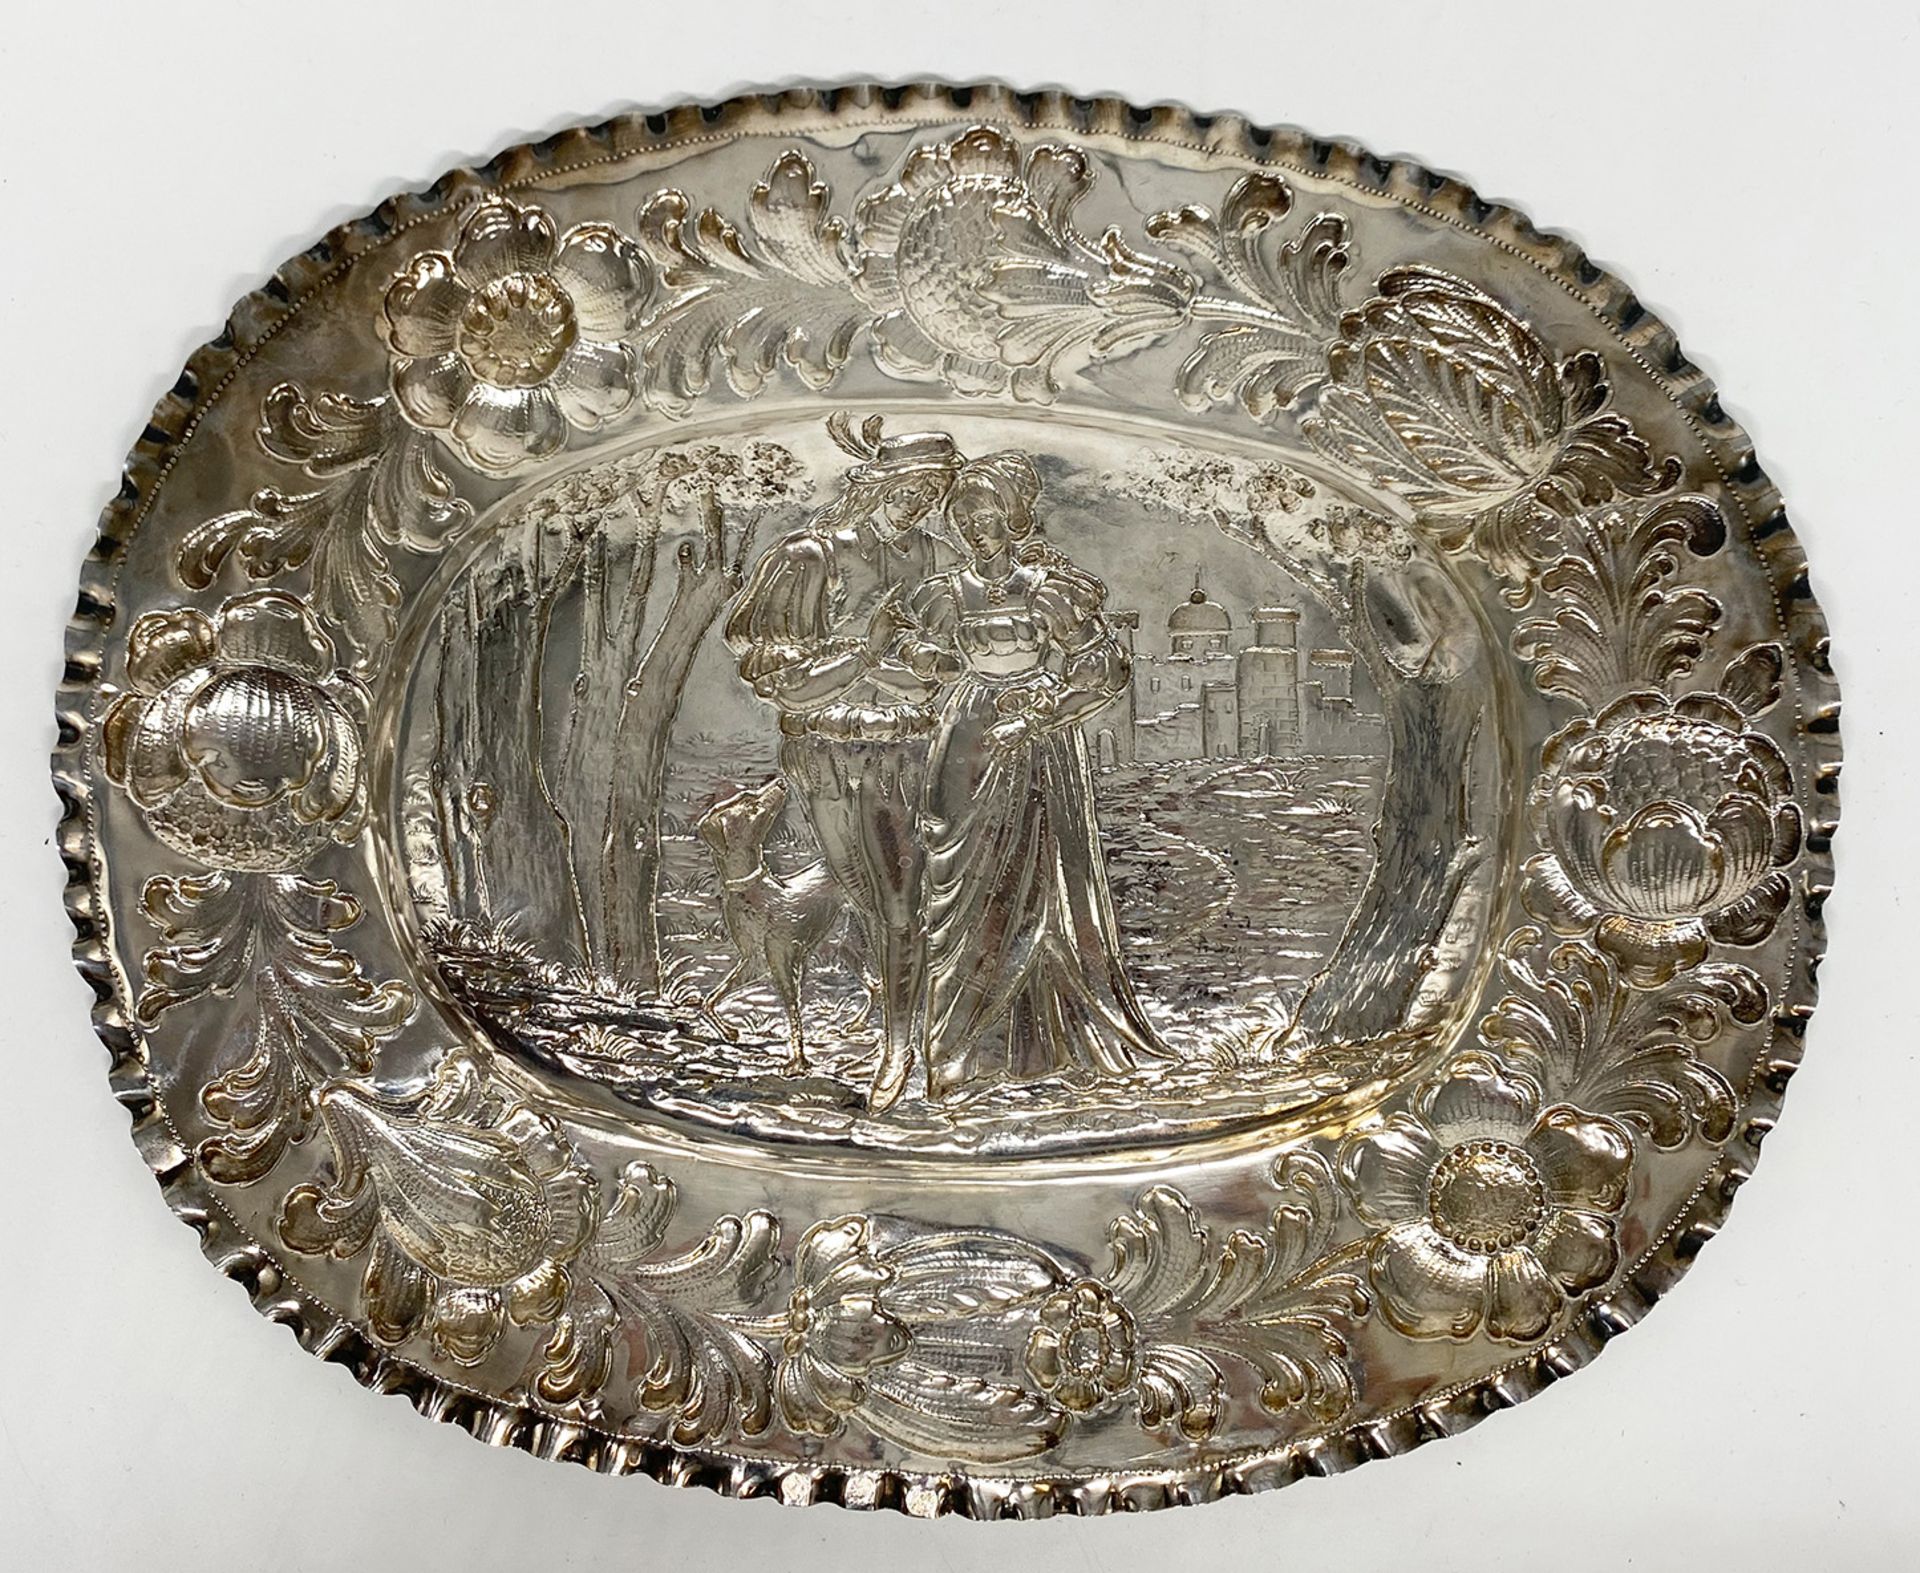 Ovale Silberschale mit üppigem Blumendekor-Relief auf der Fahne sowie einer Figurendarstellung im - Image 2 of 3